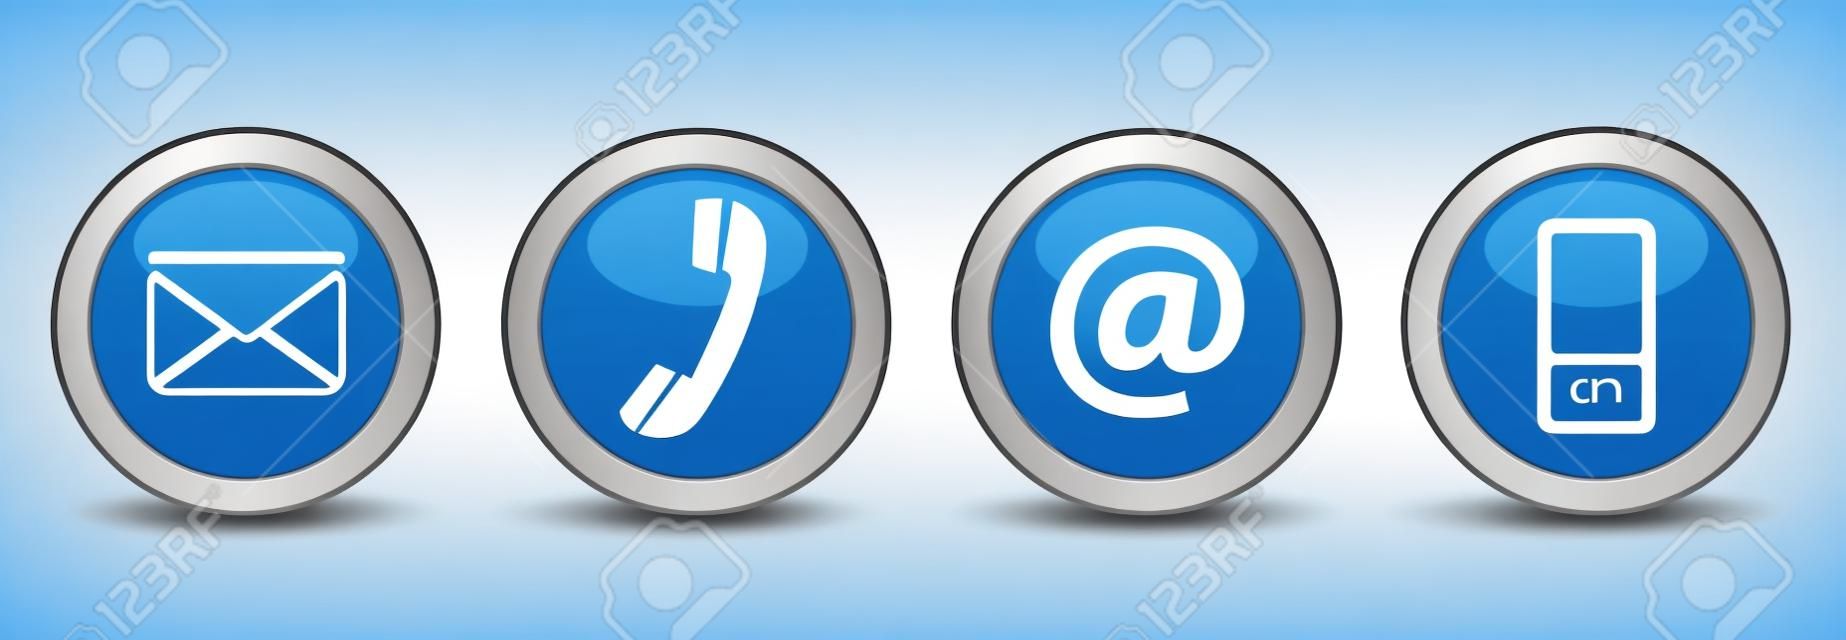 聯繫我們的網頁按鈕設置電子郵件，在電話和手機圖標上的藍銀徽章矢量EPS 10插圖隔絕在白色背景。